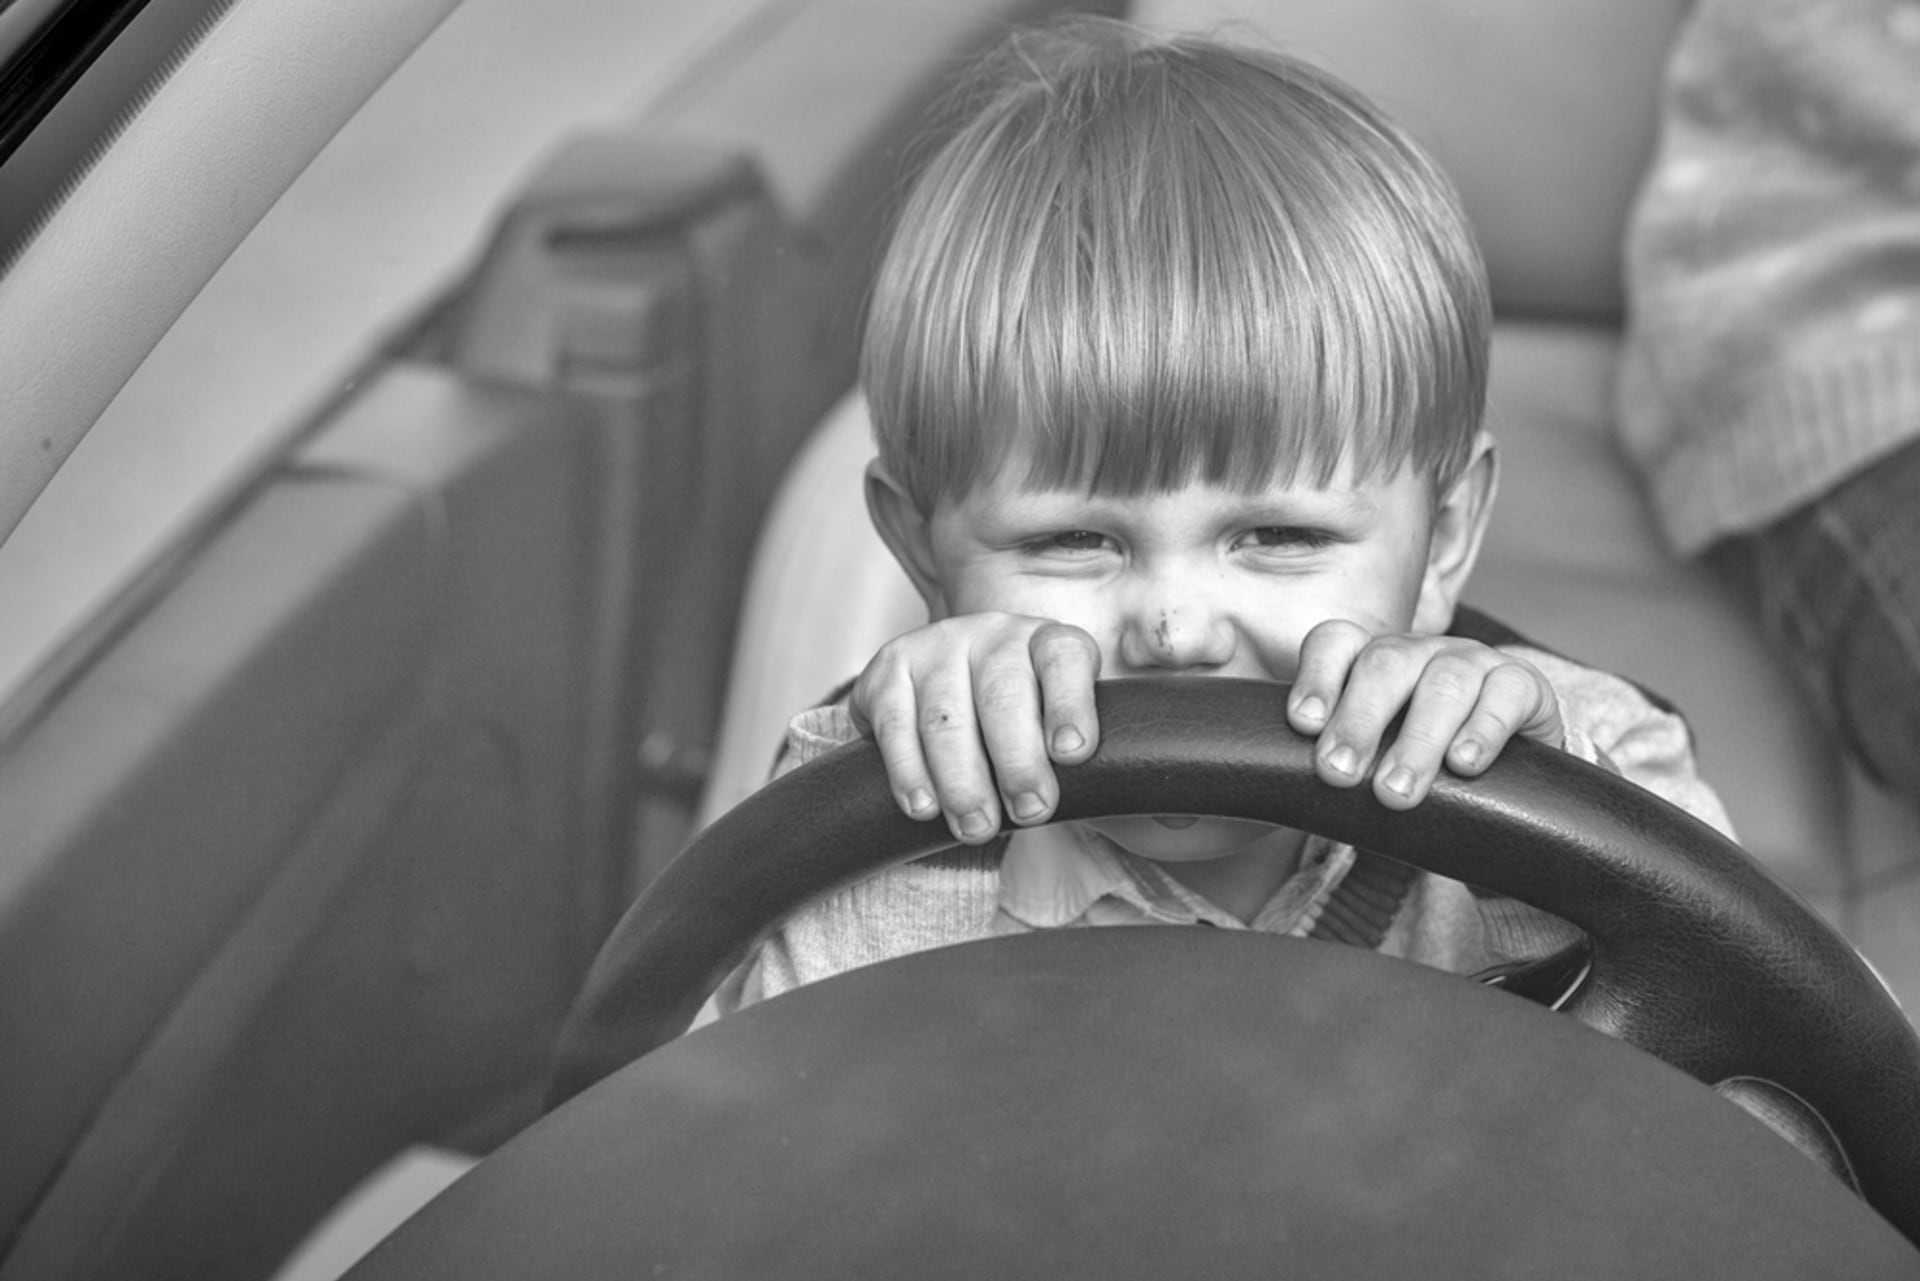 Čtyřletý chlapec, kterému se v Monaku podařilo usednout za volant luxusního vozu svého otce, srazil a vážně zranil chodce. (Ilustrační foto)